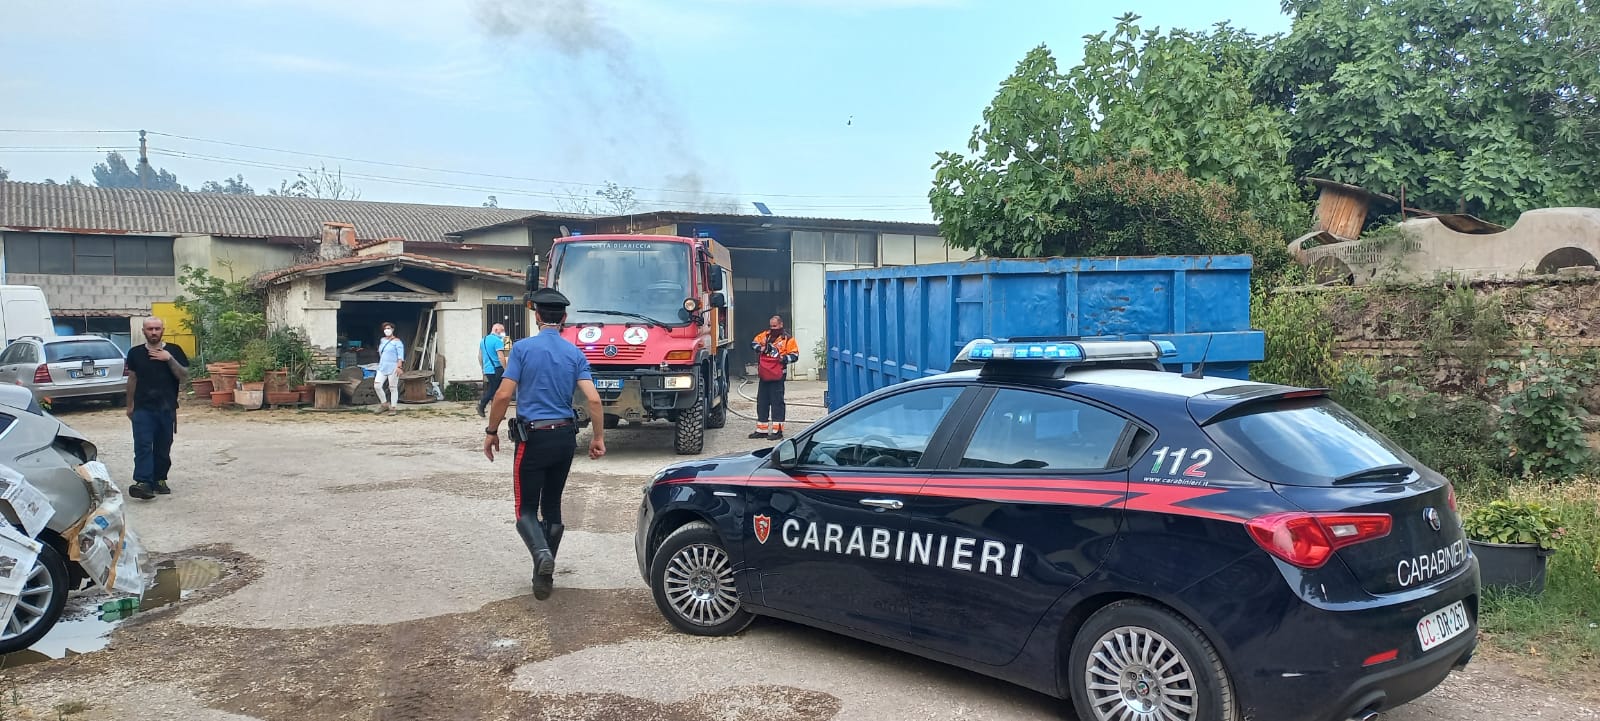 Incendio pomezia via messico oggi con intervento Vigili del Fuoco e Carabinieri